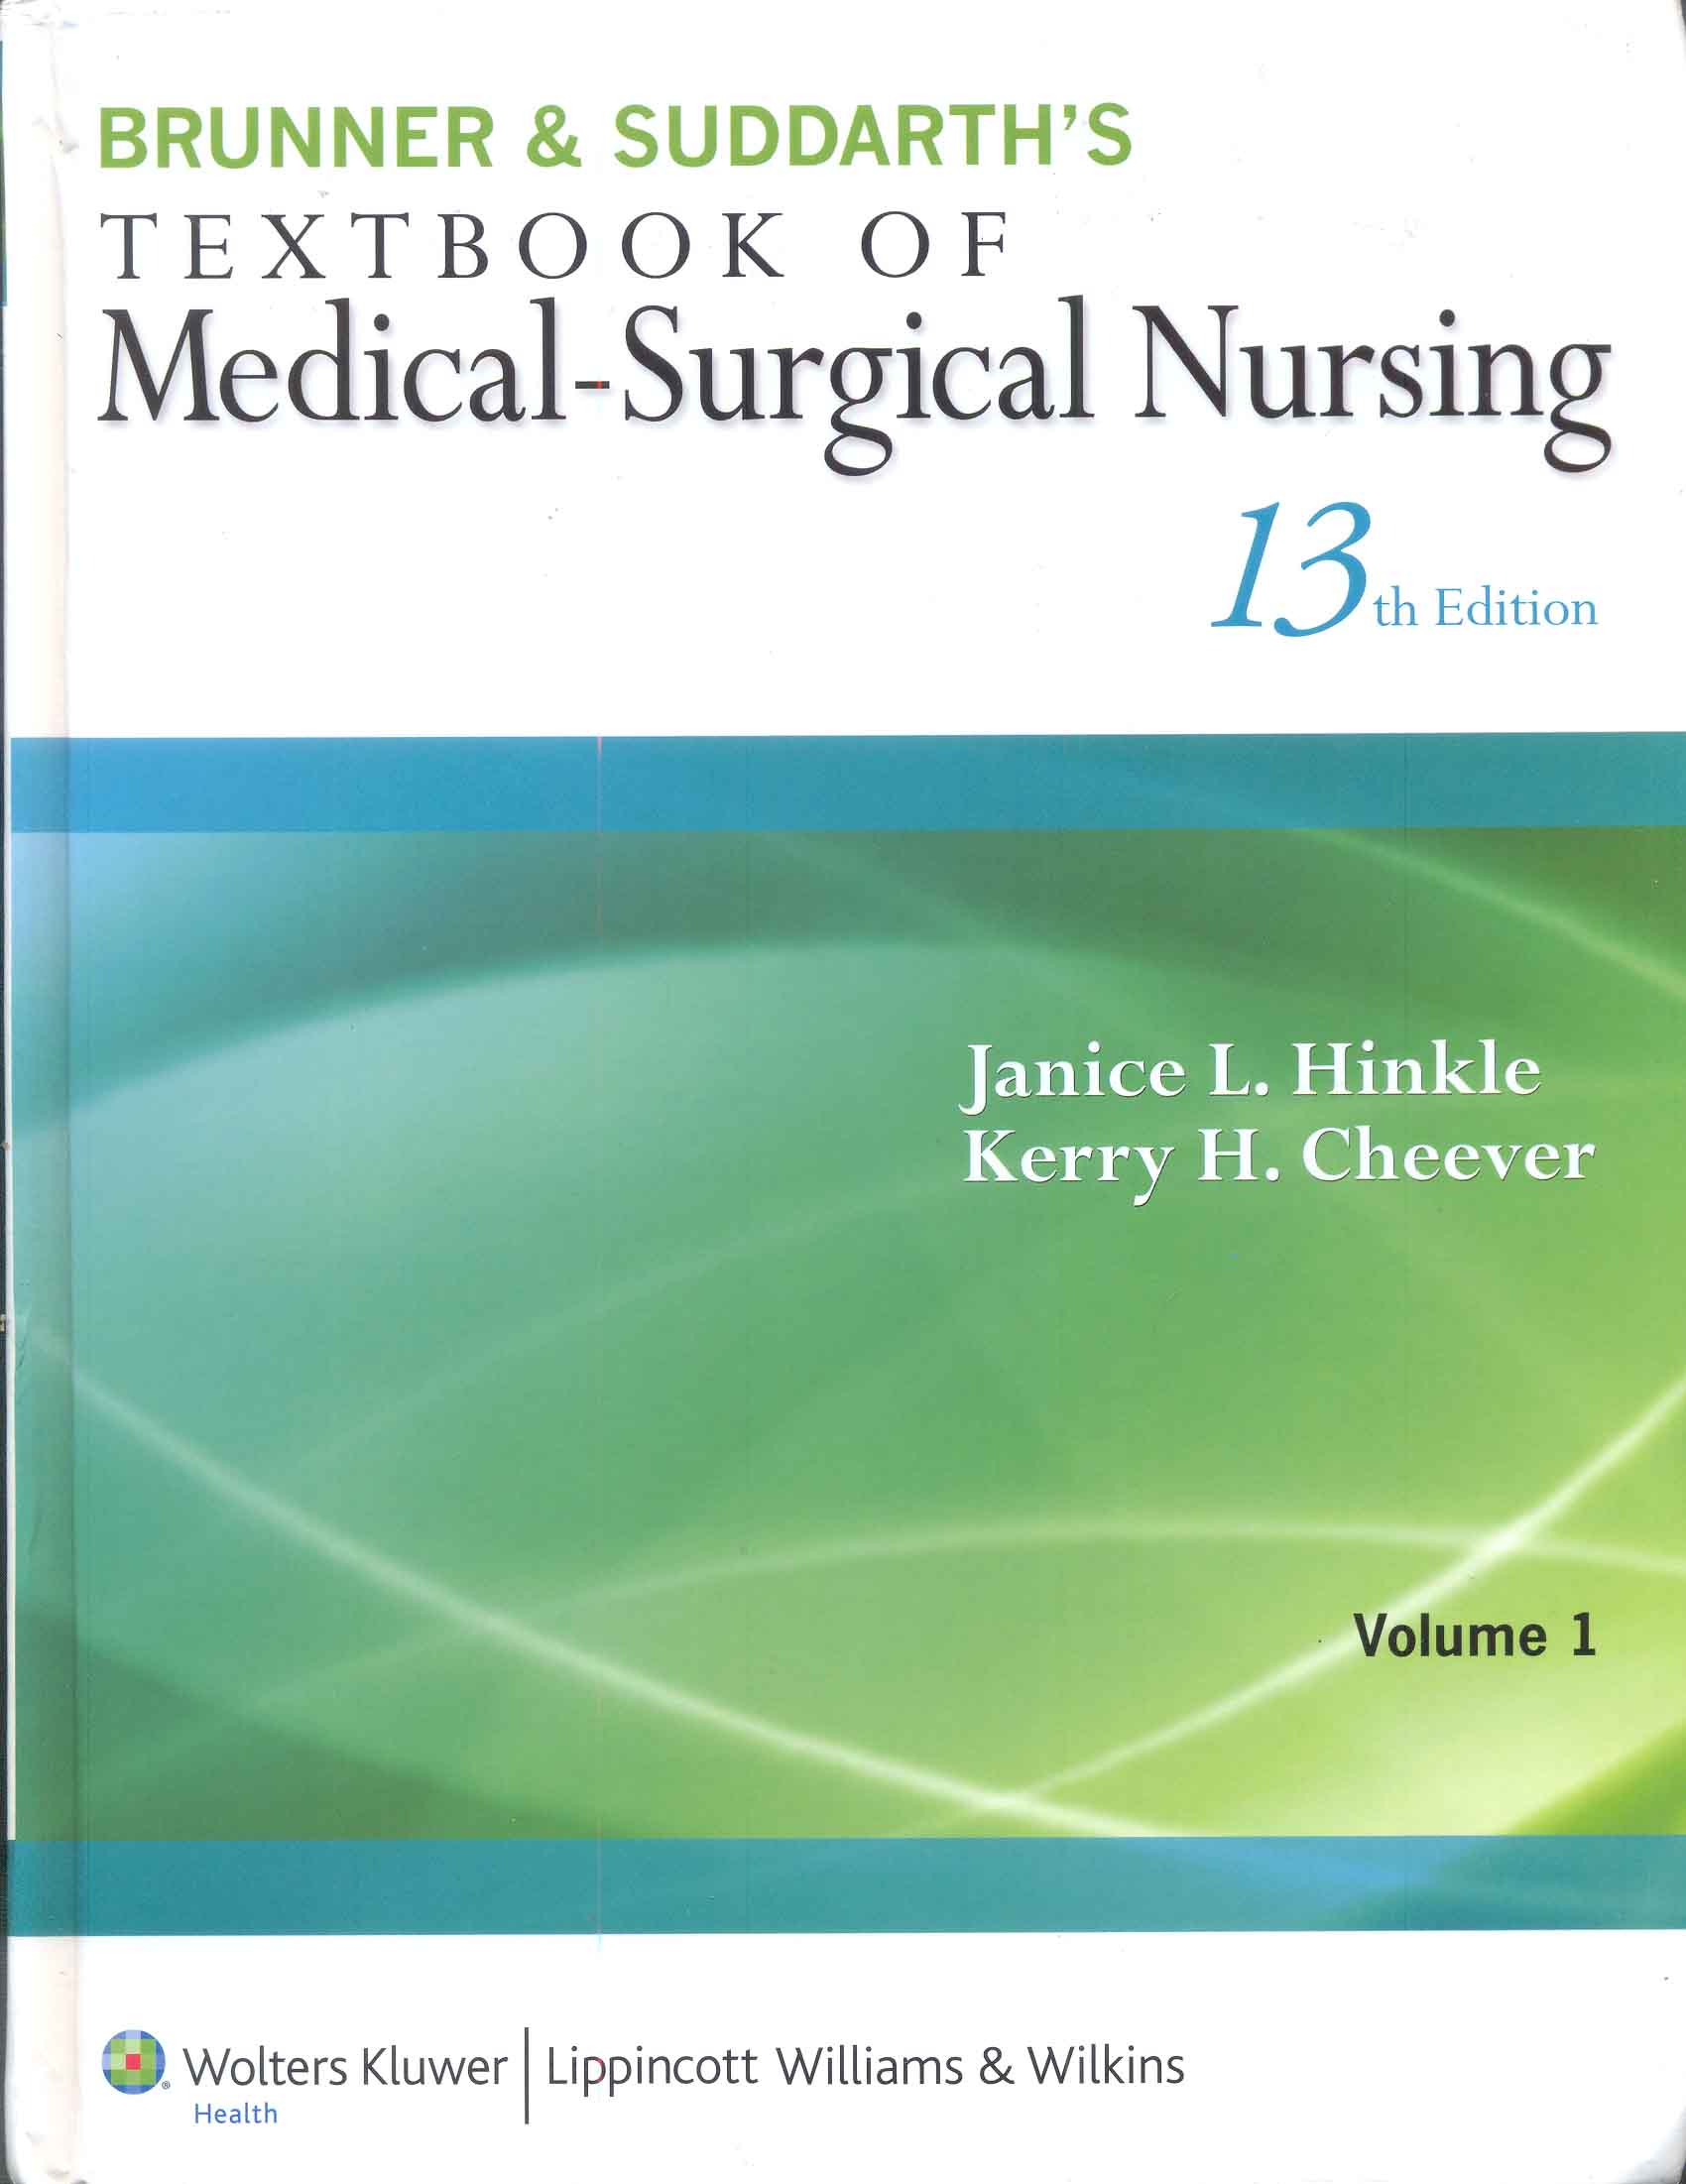 Brunner & Suddarth's textbook of medical-surgical nursing